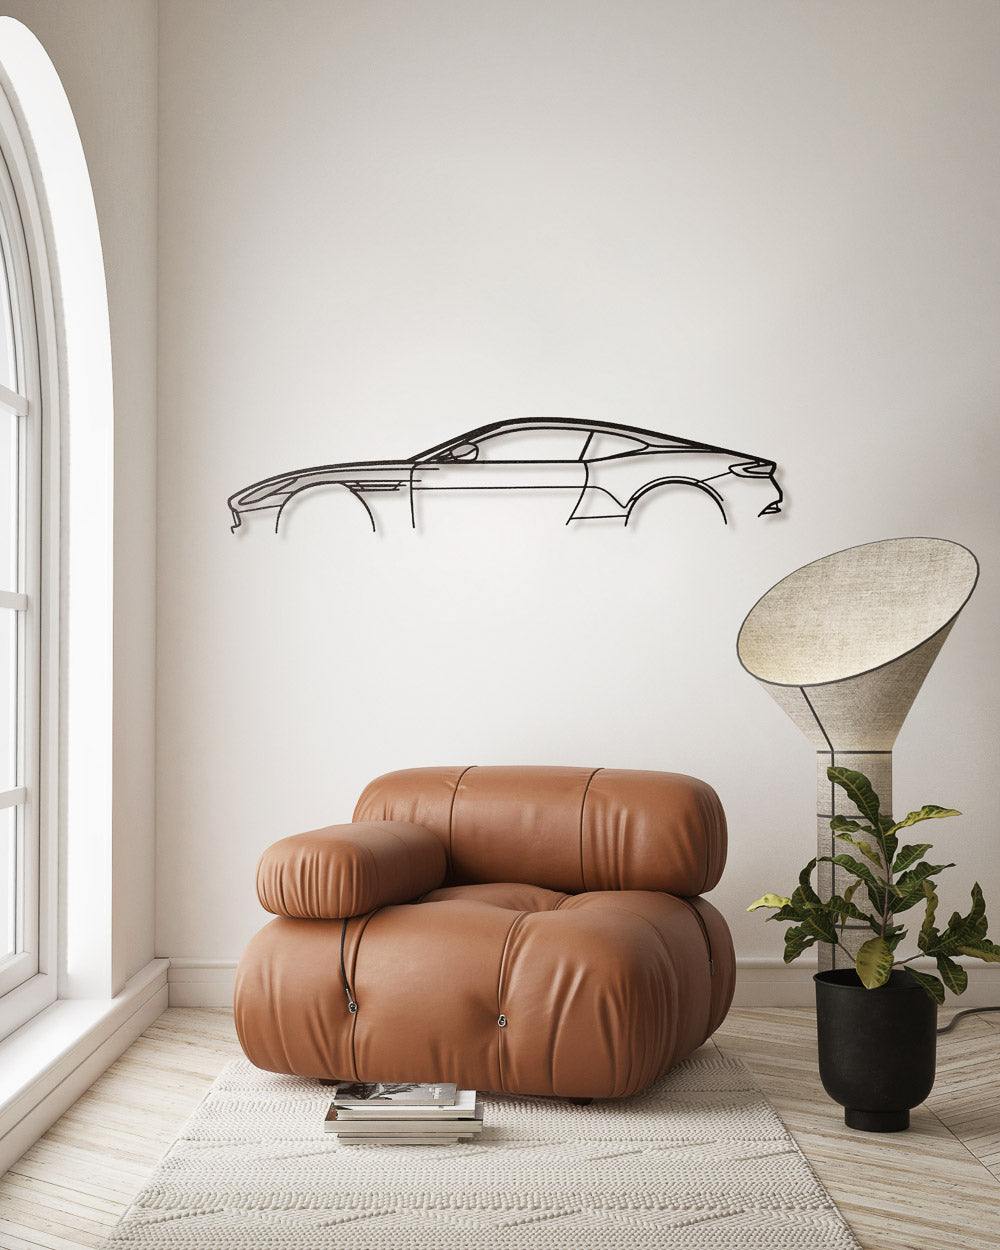 Nos - Aston Martin DB11 - Sagoma in Metallo di Design